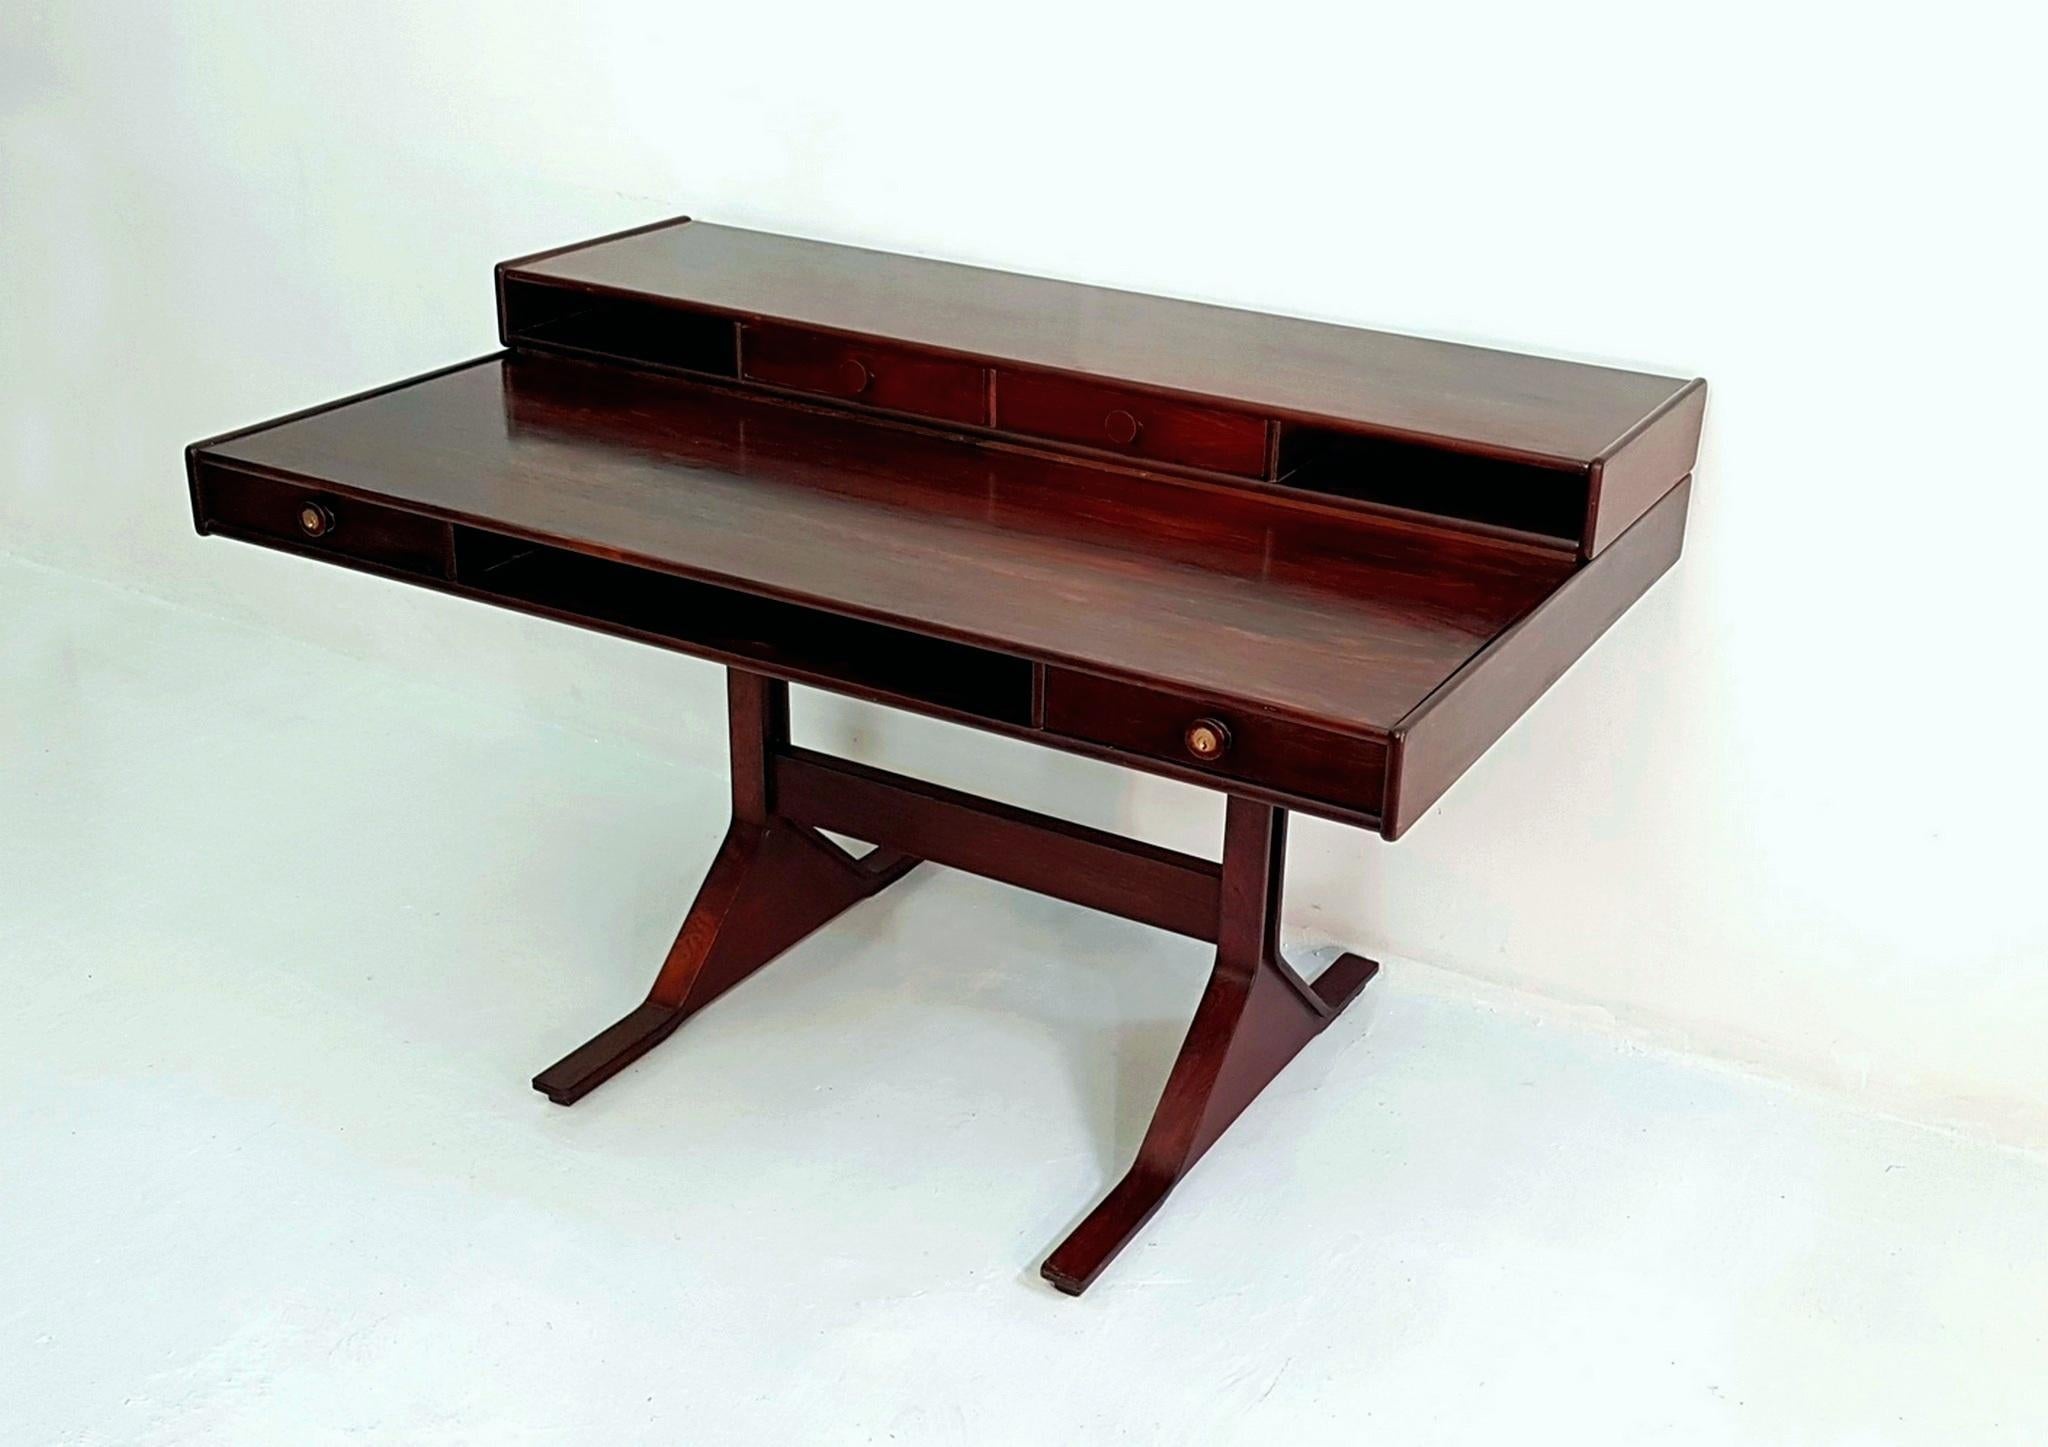 Der klassische Schreibtisch Modell 530, eine Kreation des berühmten Gianfranco Frattini, wurde 1963 von den geschickten Händen der Firma Bernini in Mailand, Italien, gefertigt und ist ein Meisterwerk an Design und Funktion. Auf der Rückseite der